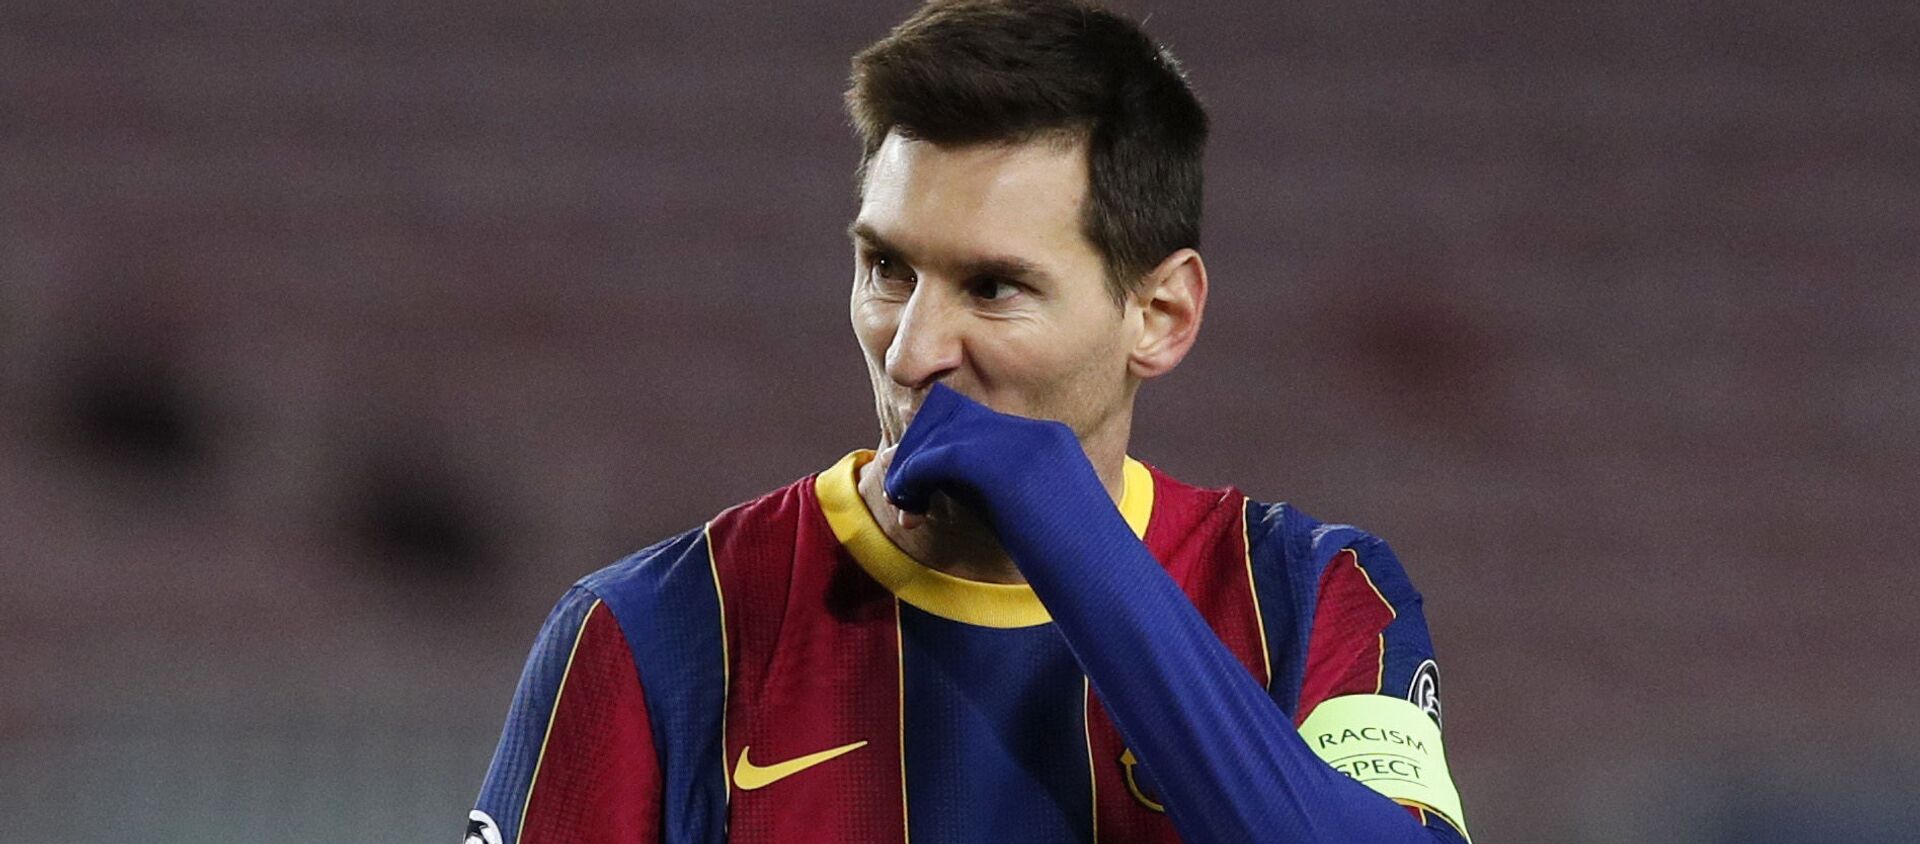 Lionel Messi, futbolista argentino - Sputnik Mundo, 1920, 27.12.2020